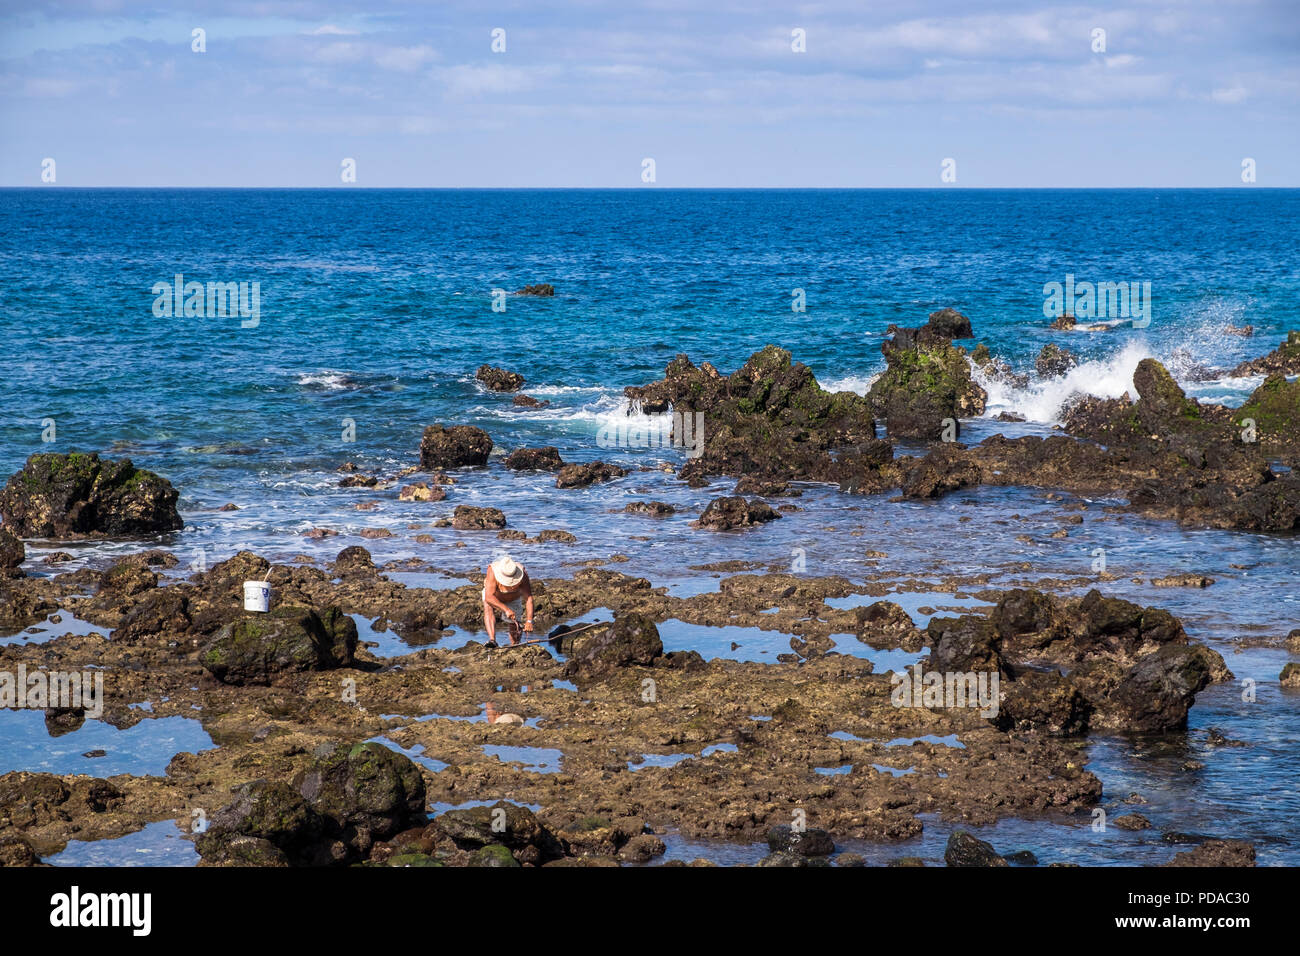 Pescador en las rocas con un pulpo recién capturados, Playa San Juan, Tenerife, Islas Canarias, España Foto de stock